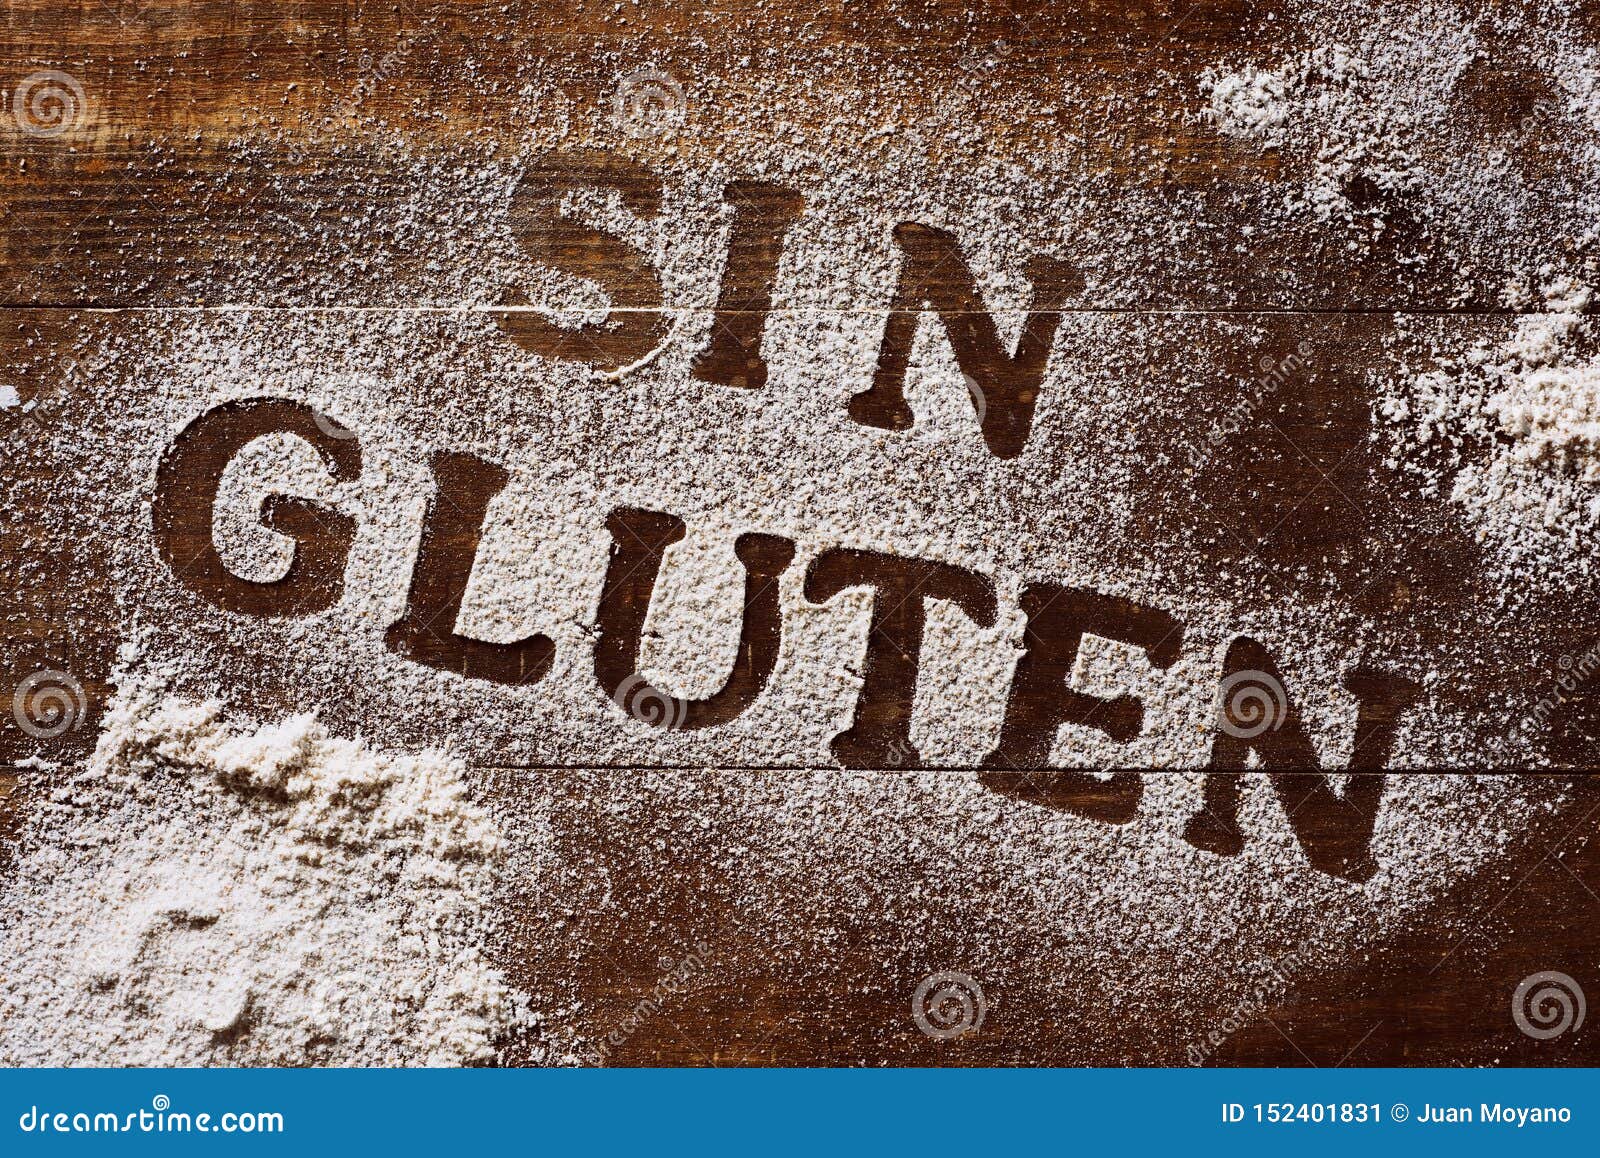 text gluten free written in spanish